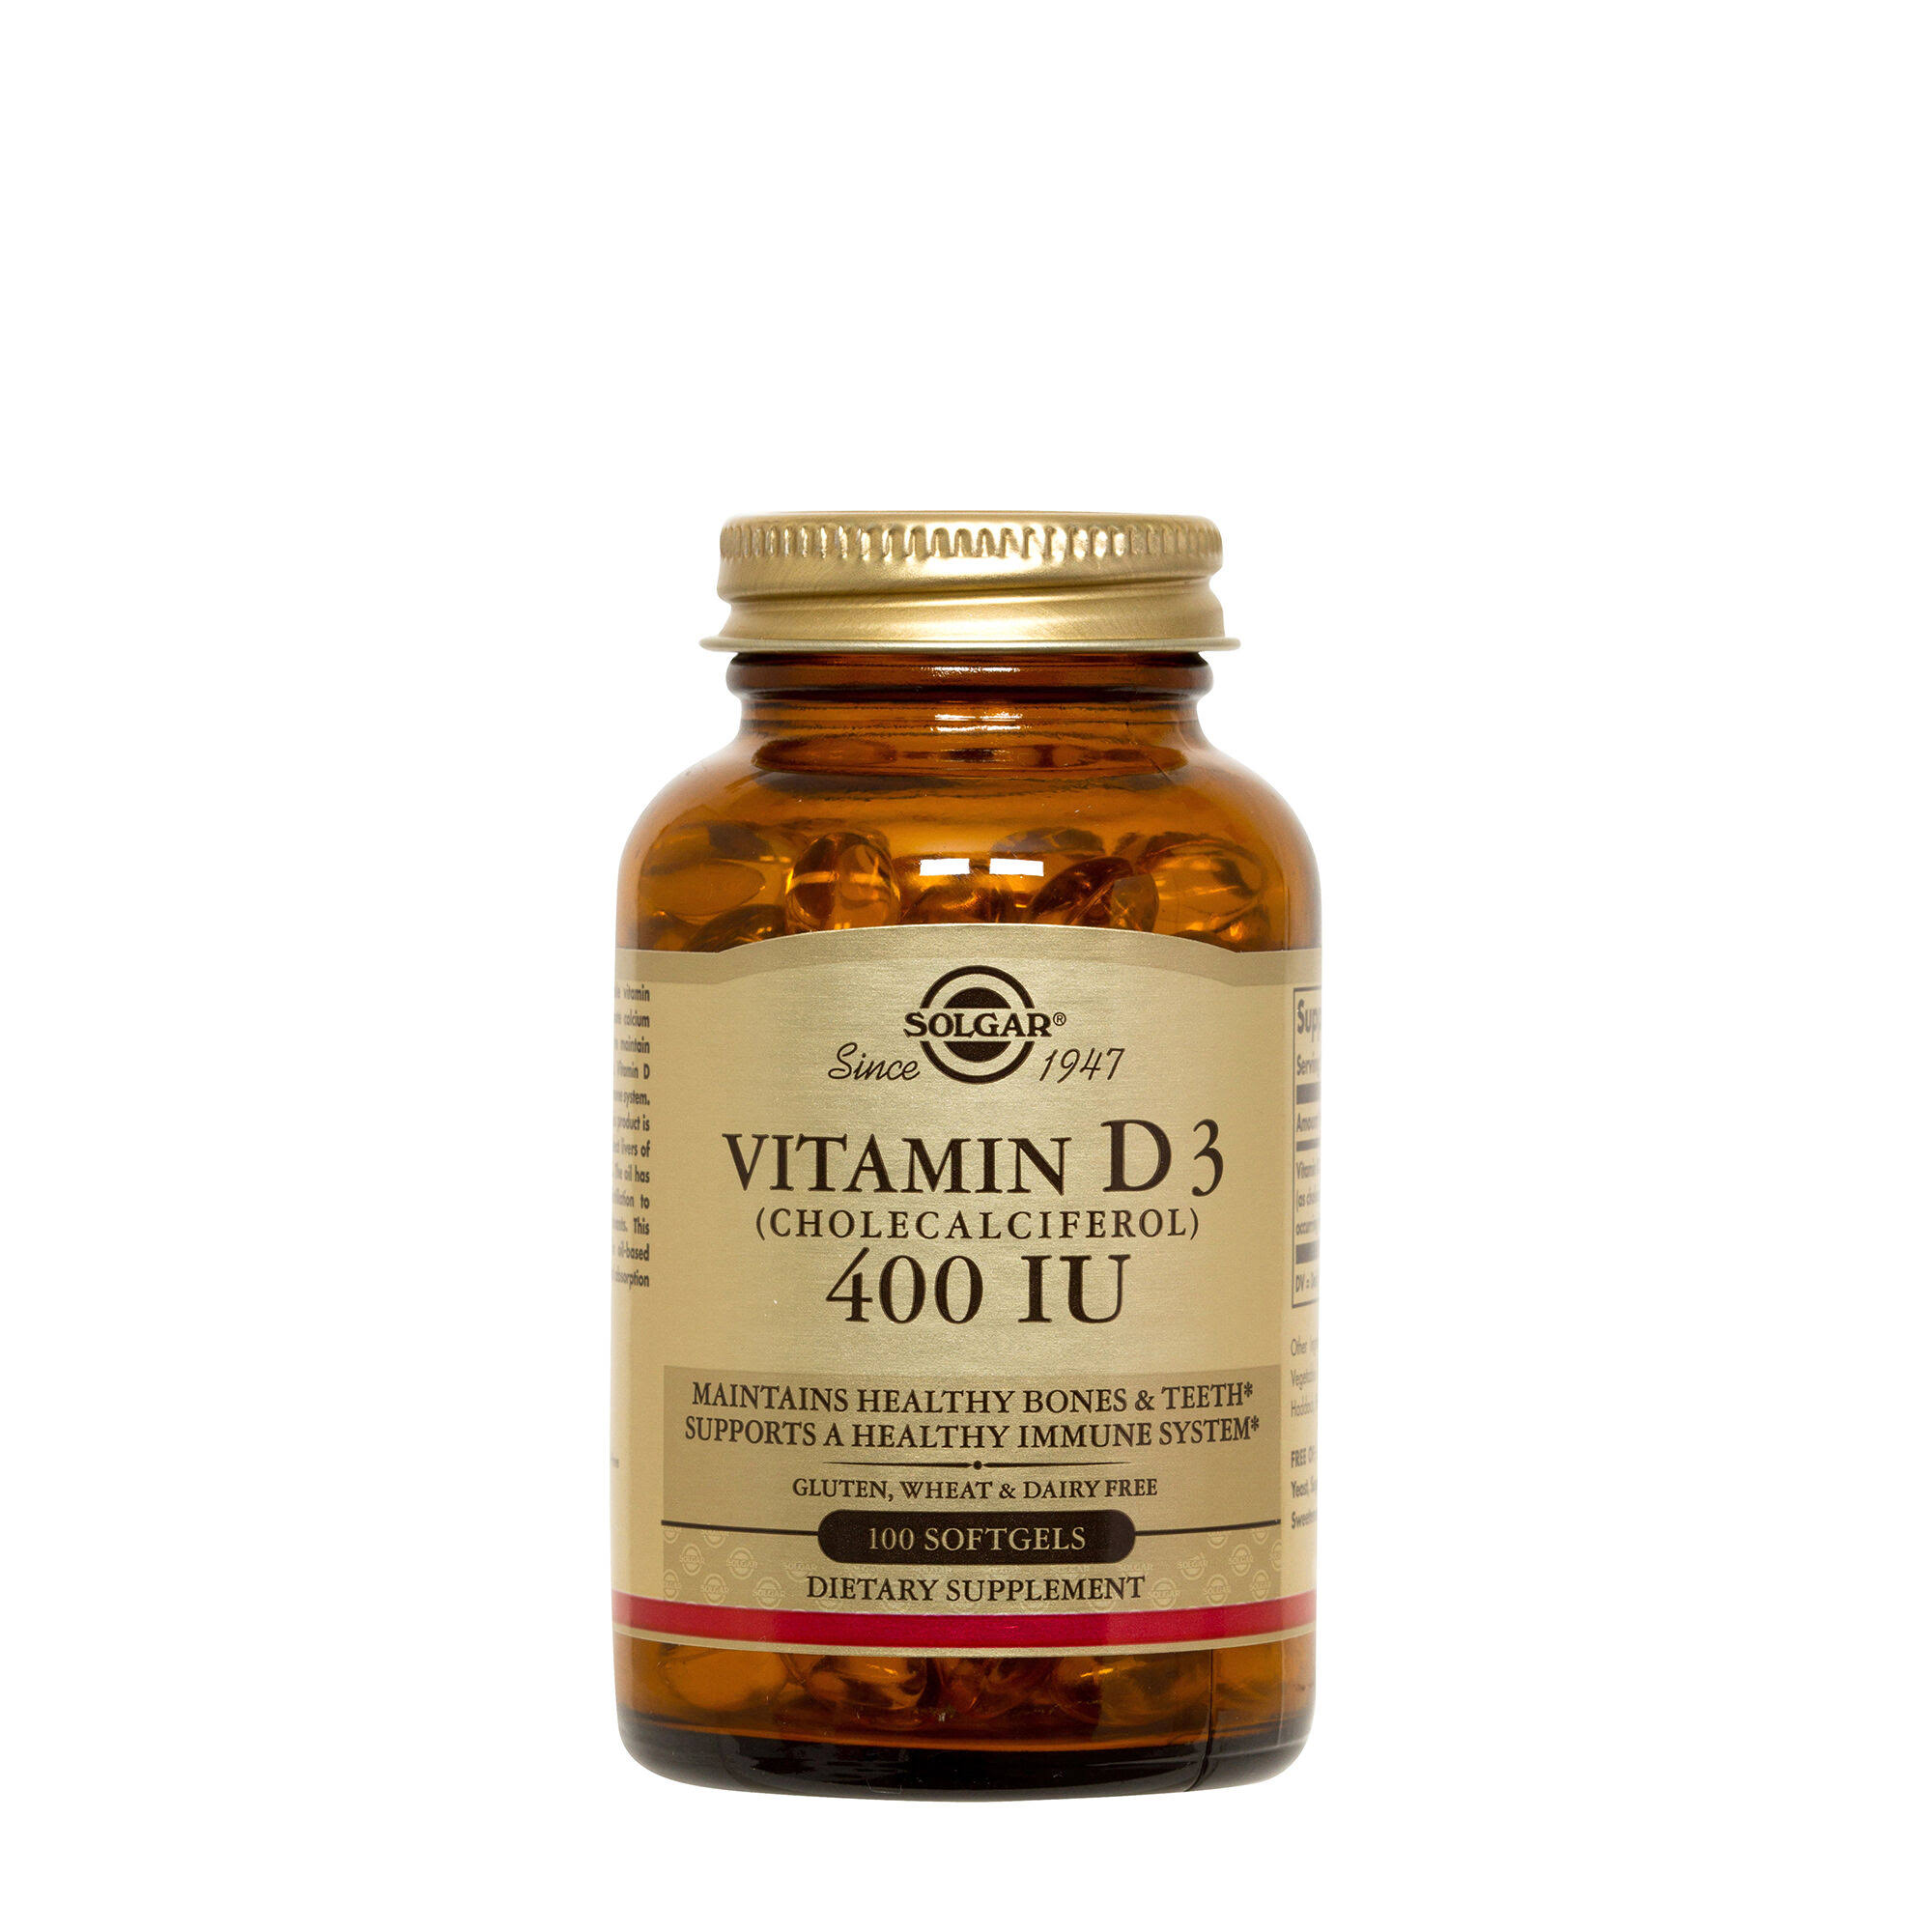 Solgar Vitamin D3 Supplement - 400 IU, 10mcg, 100 Softgels